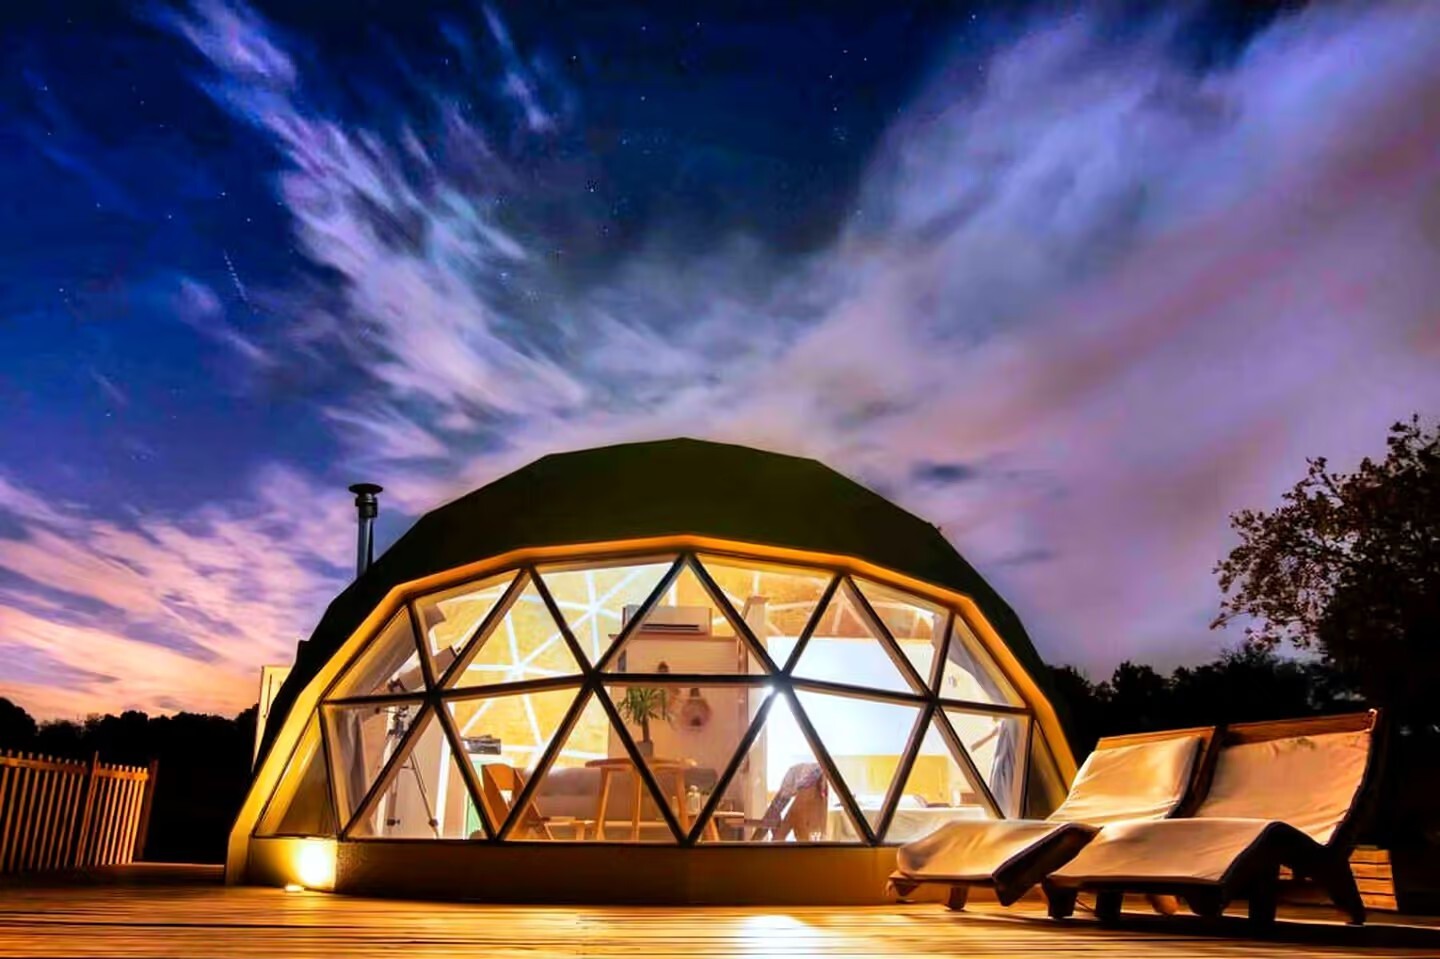 Koncept oblikovanja hotelskega šotora Dome 丨 Prvovrstna oblikovalska ekipa